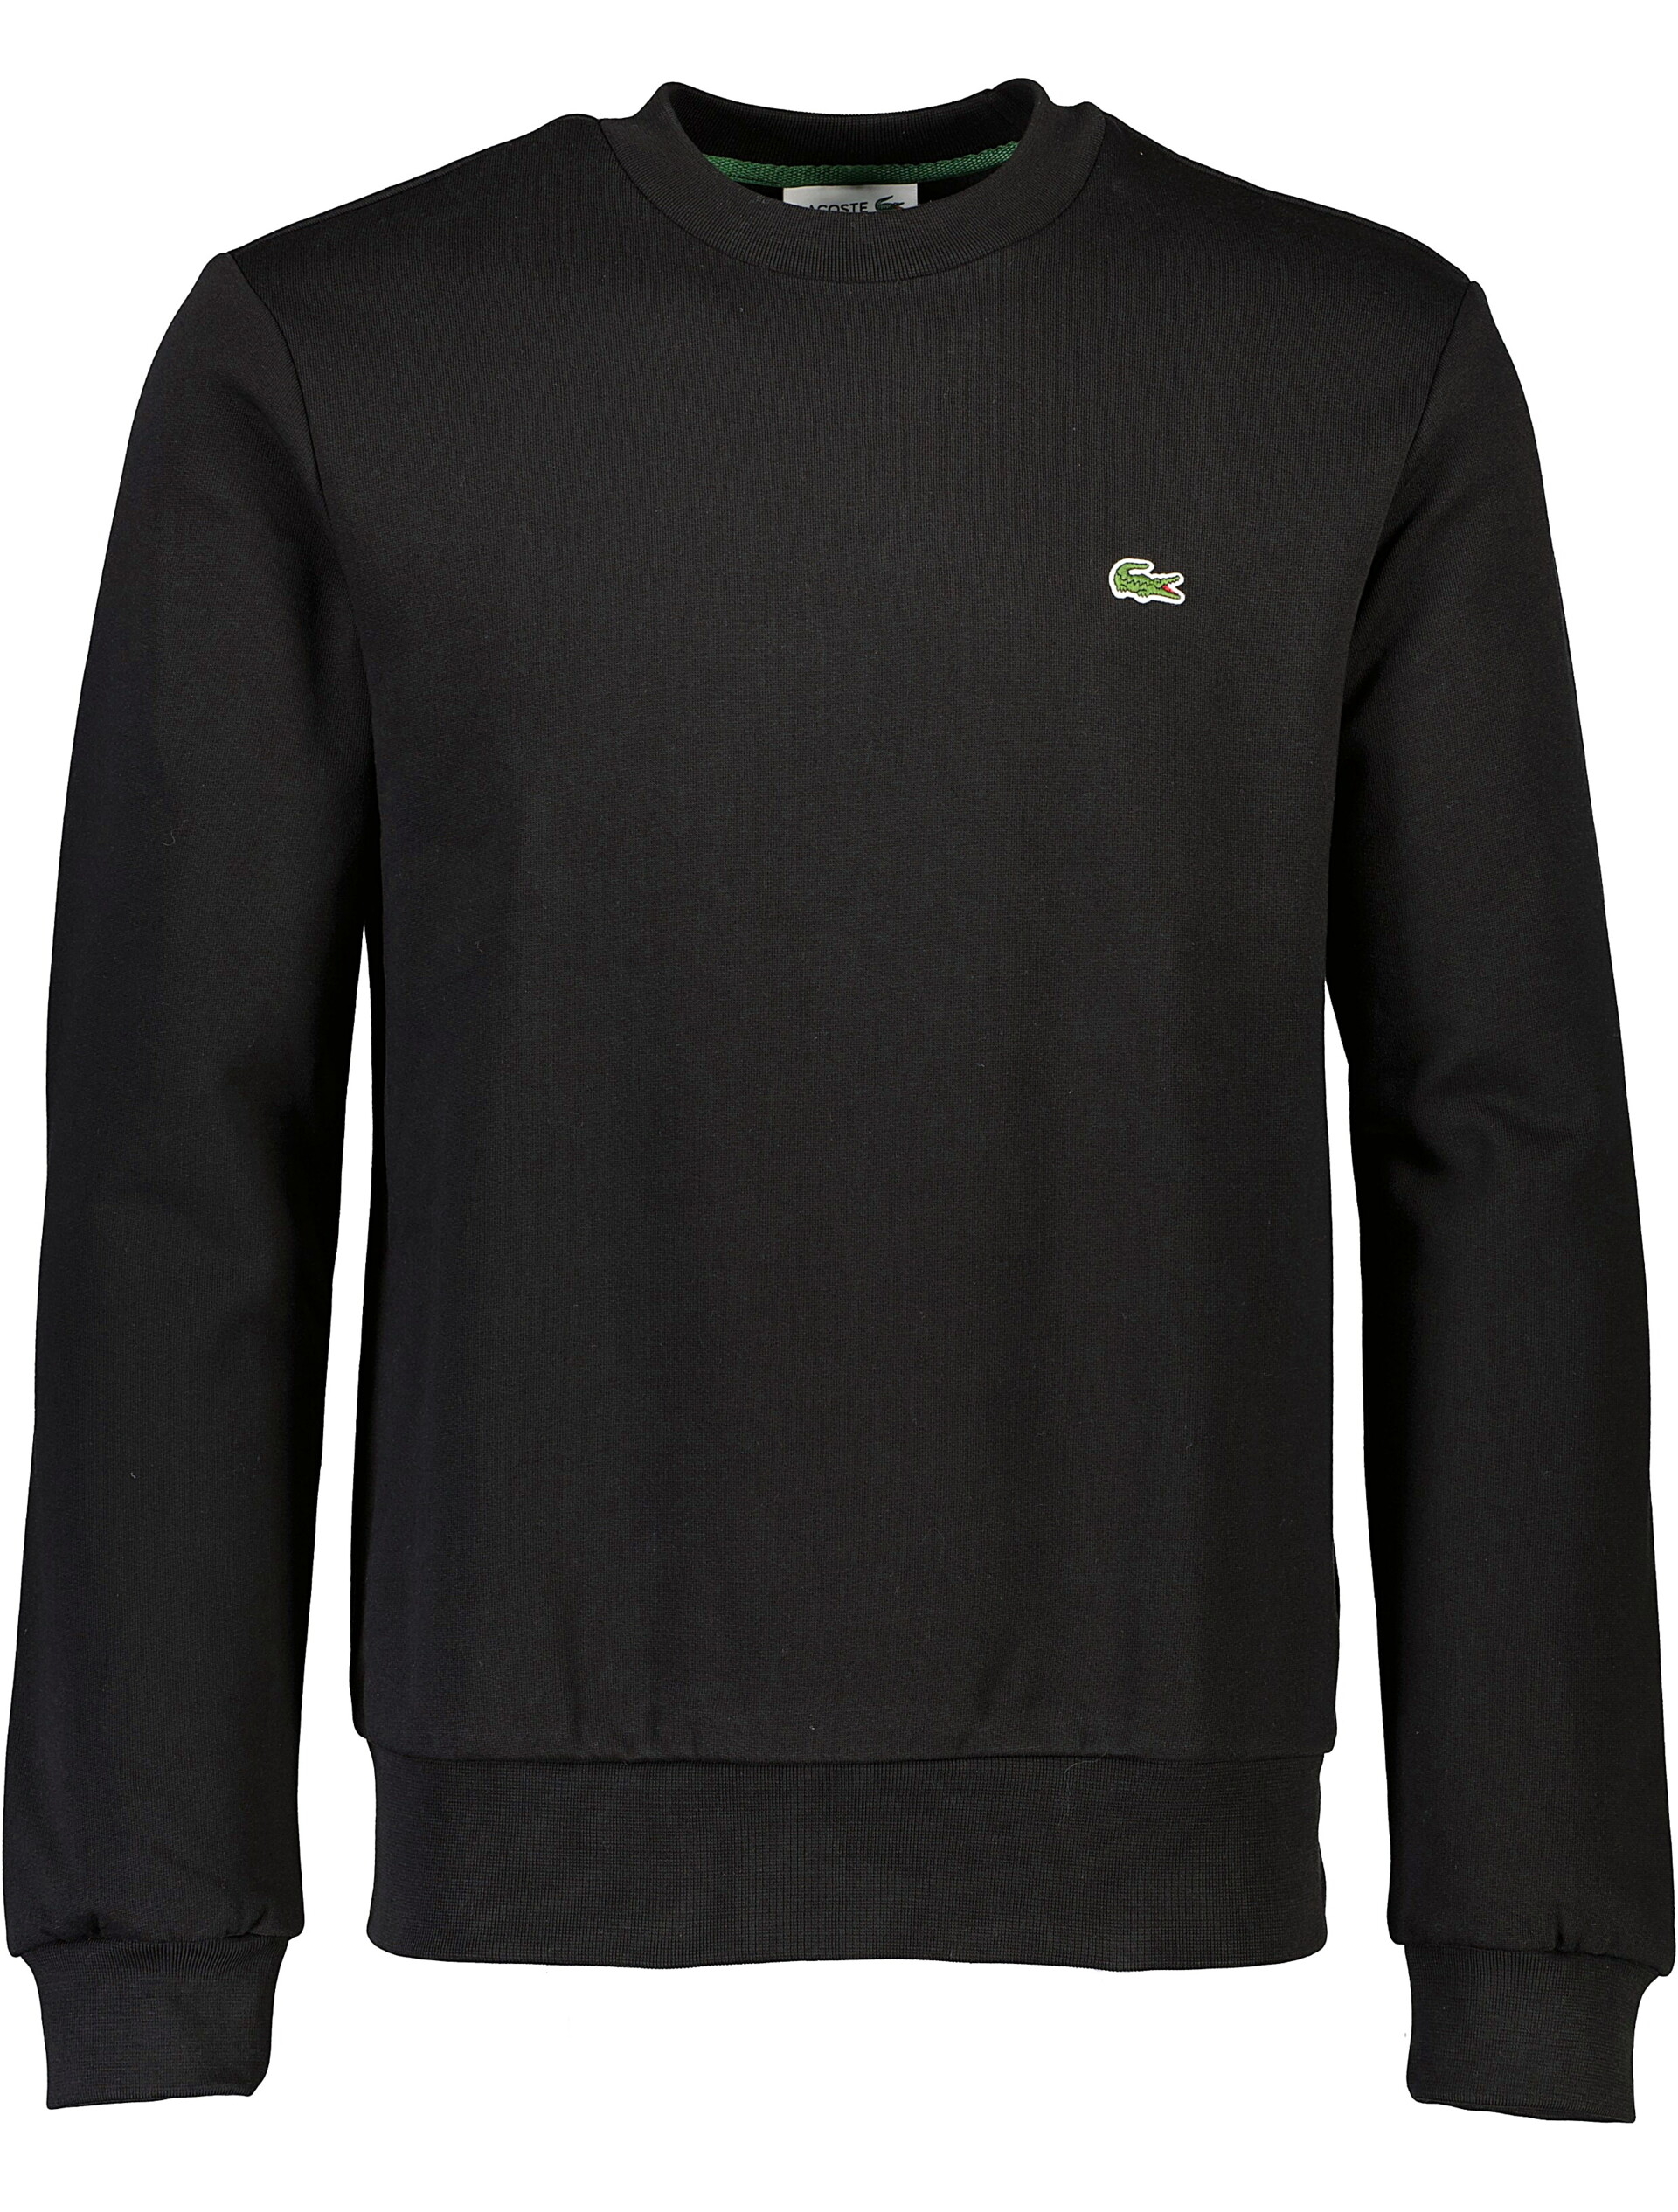 Lacoste Sweatshirt sort / 031 black